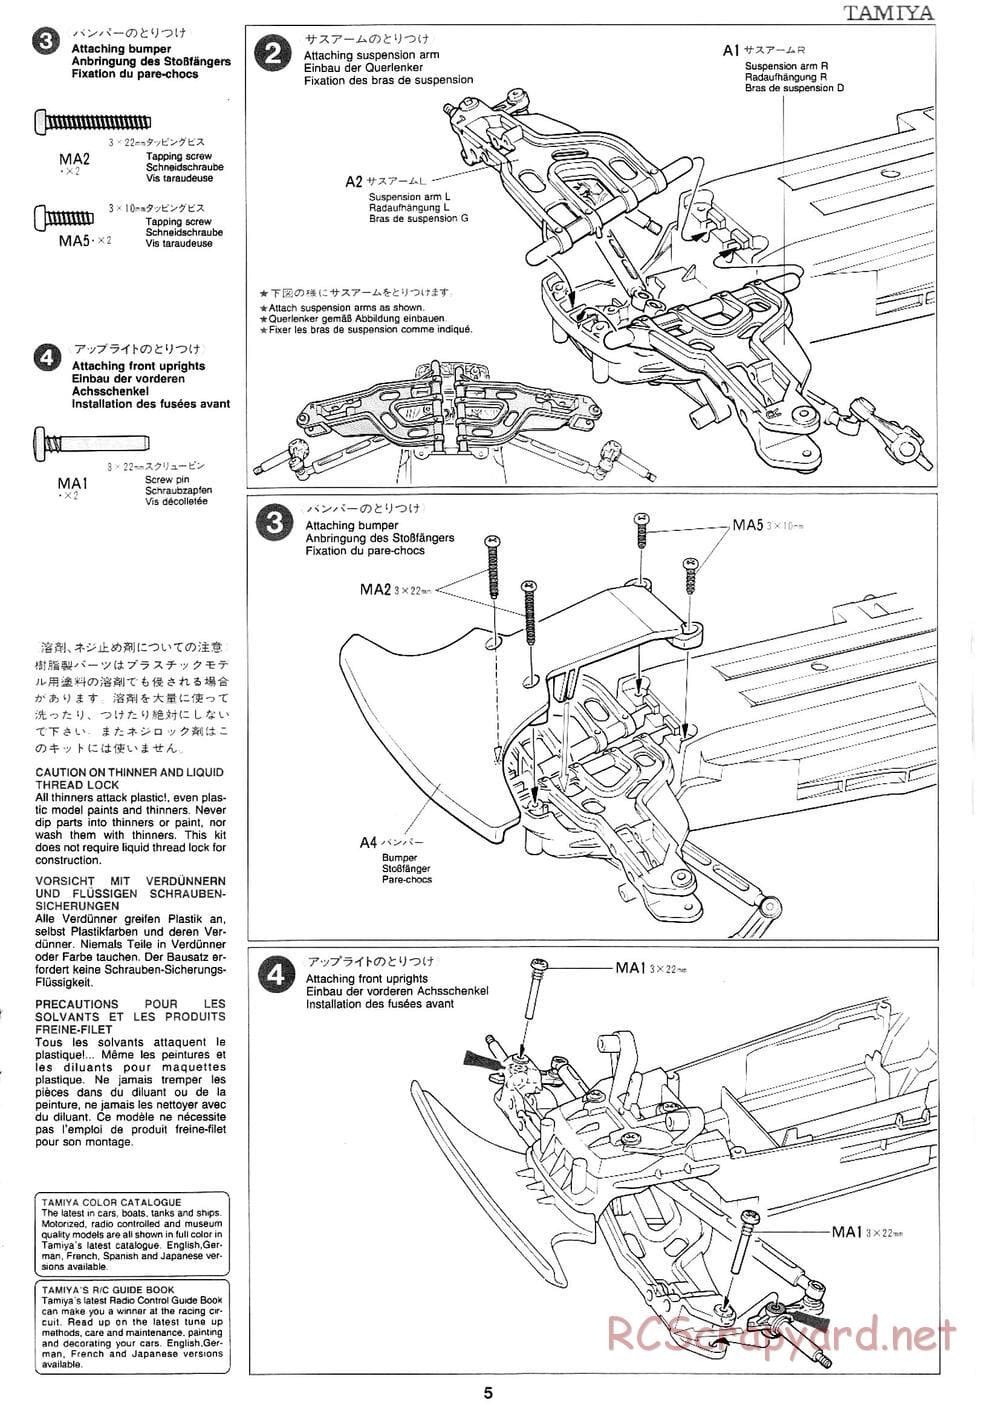 Tamiya - Mad Bull Chassis - Manual - Page 5